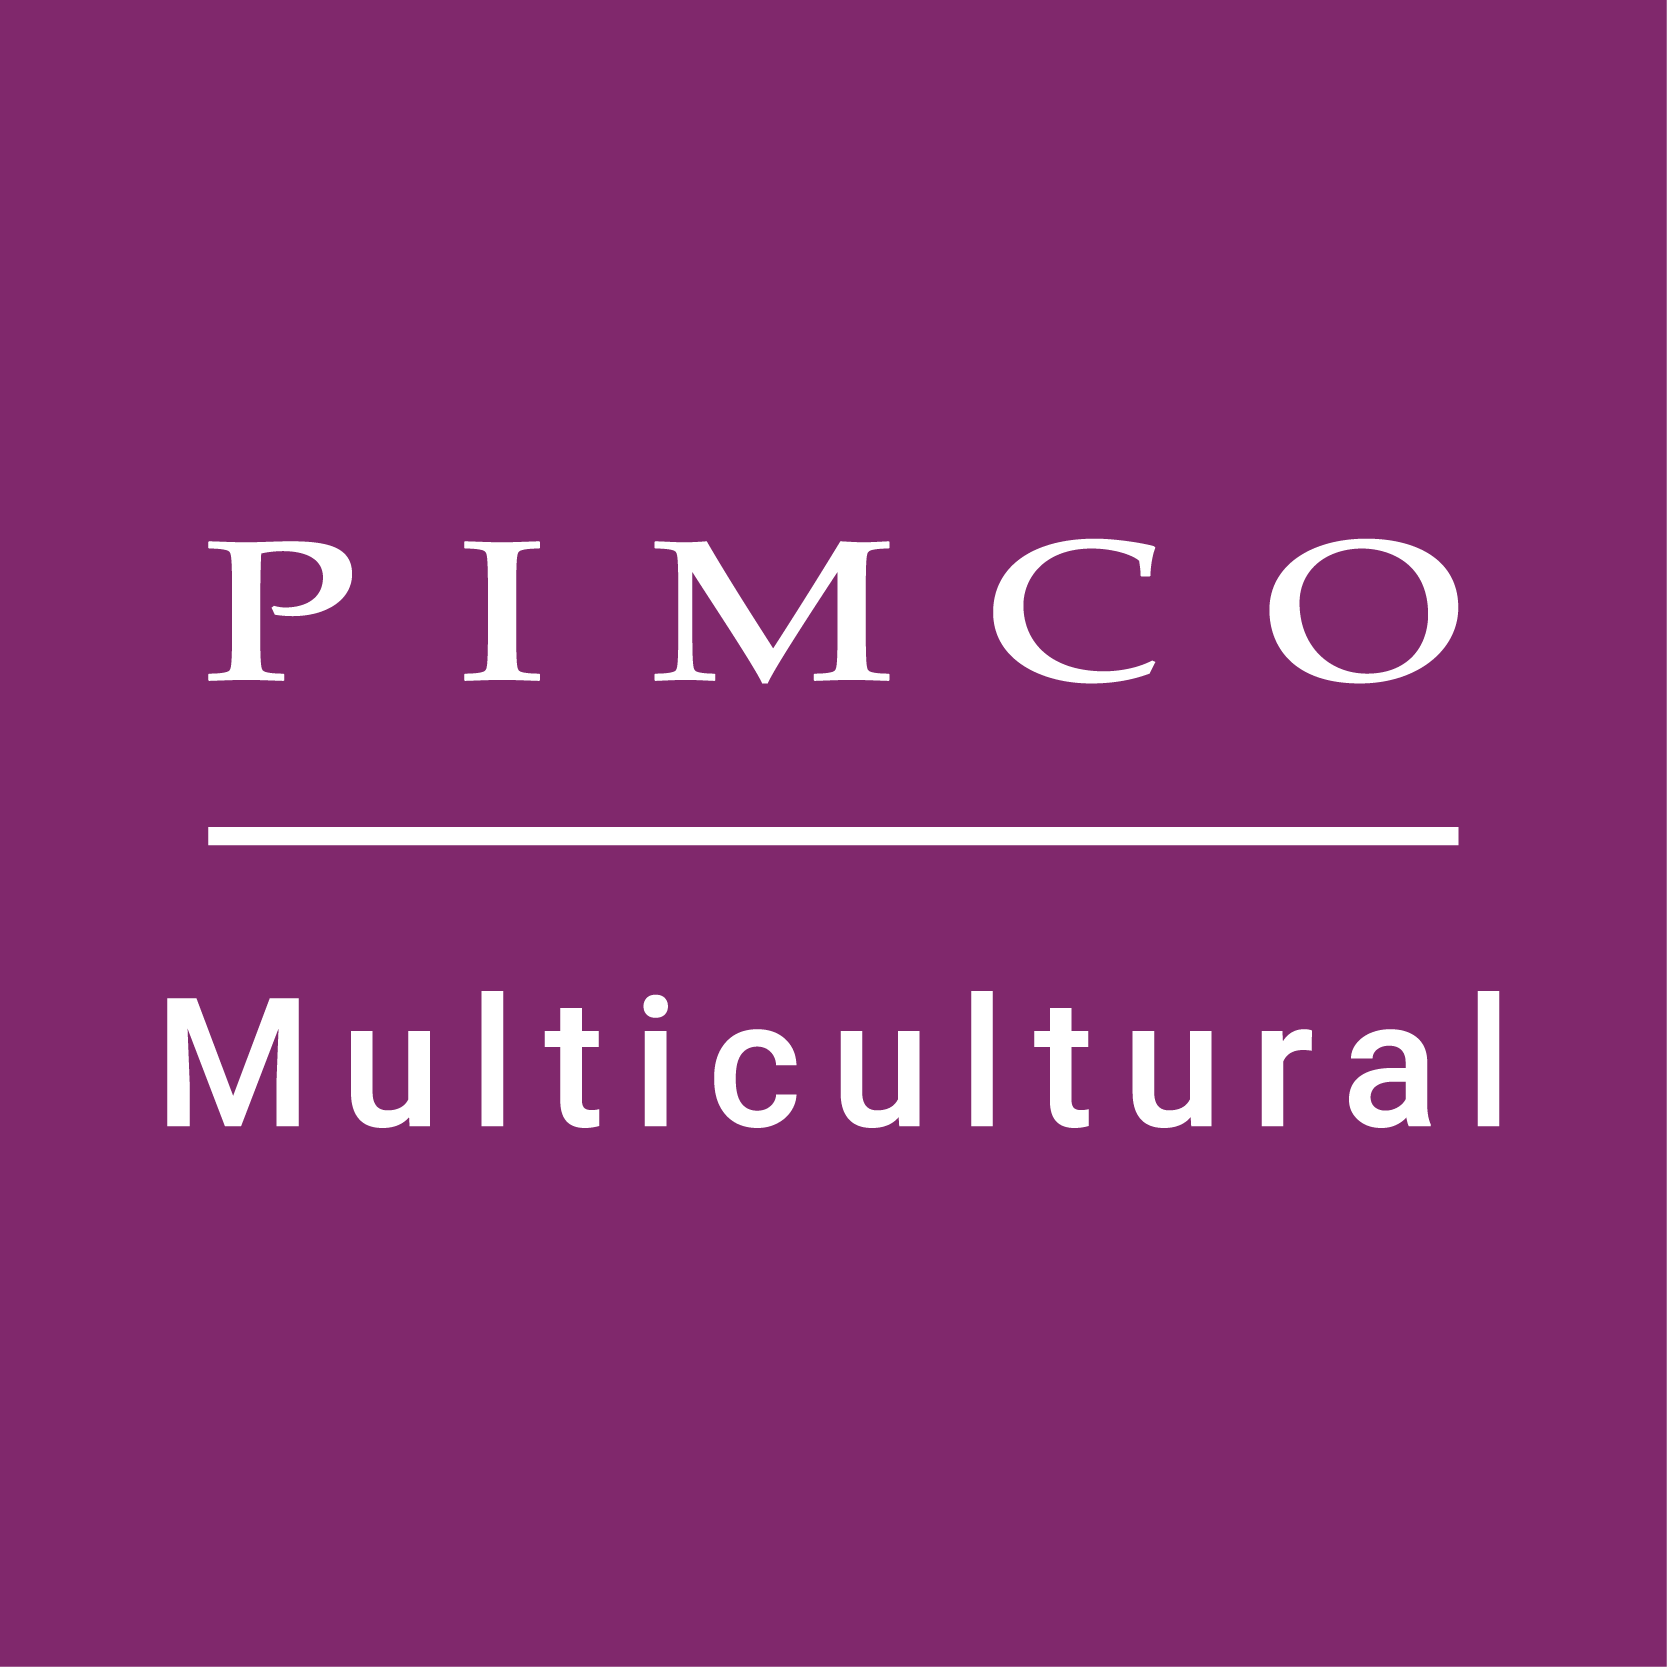 PIMCO Multicultural